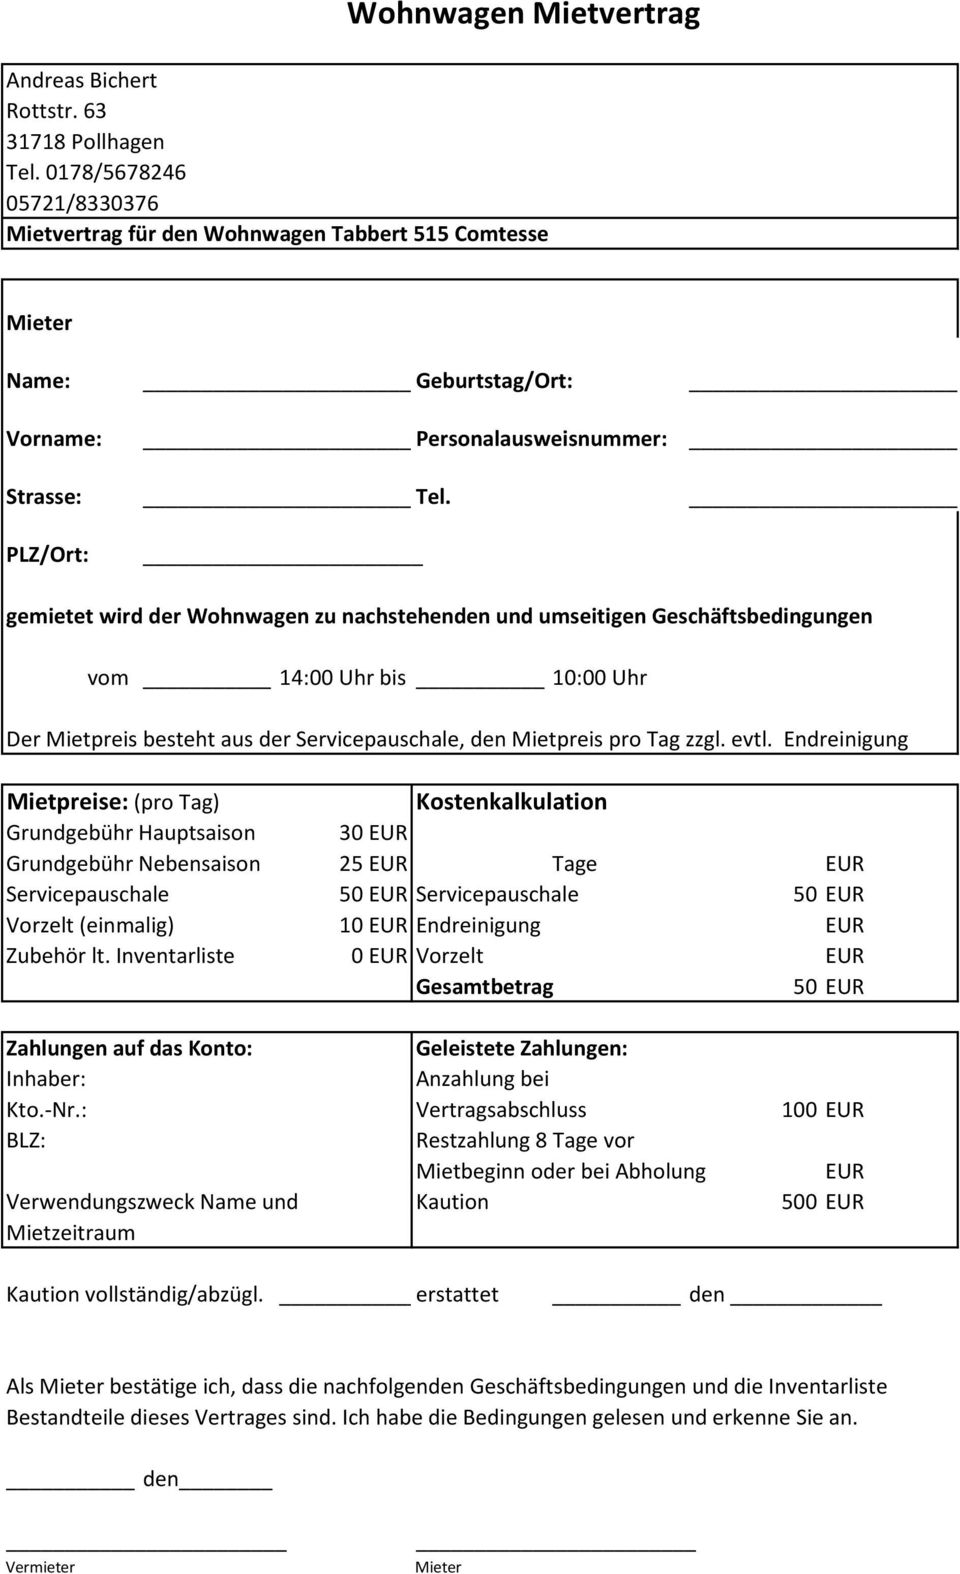 Wohnwagen Mietvertrag - PDF Kostenfreier Download